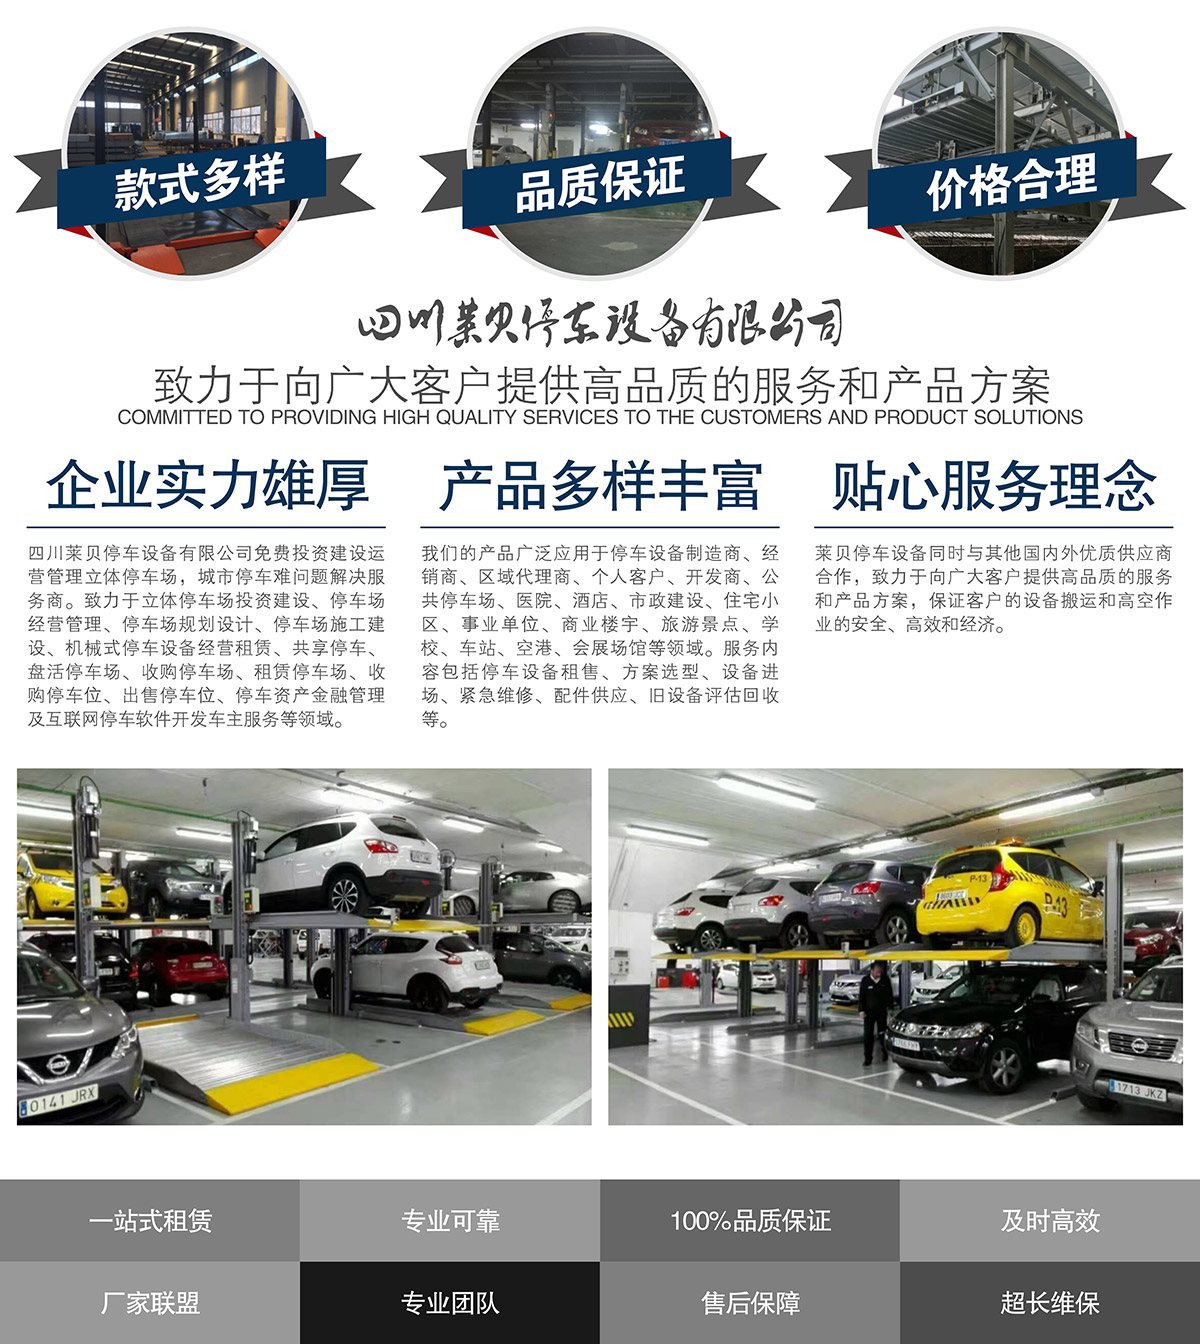 重庆莱贝立体停车场投资经营提供高品质的服务和产品方案.jpg